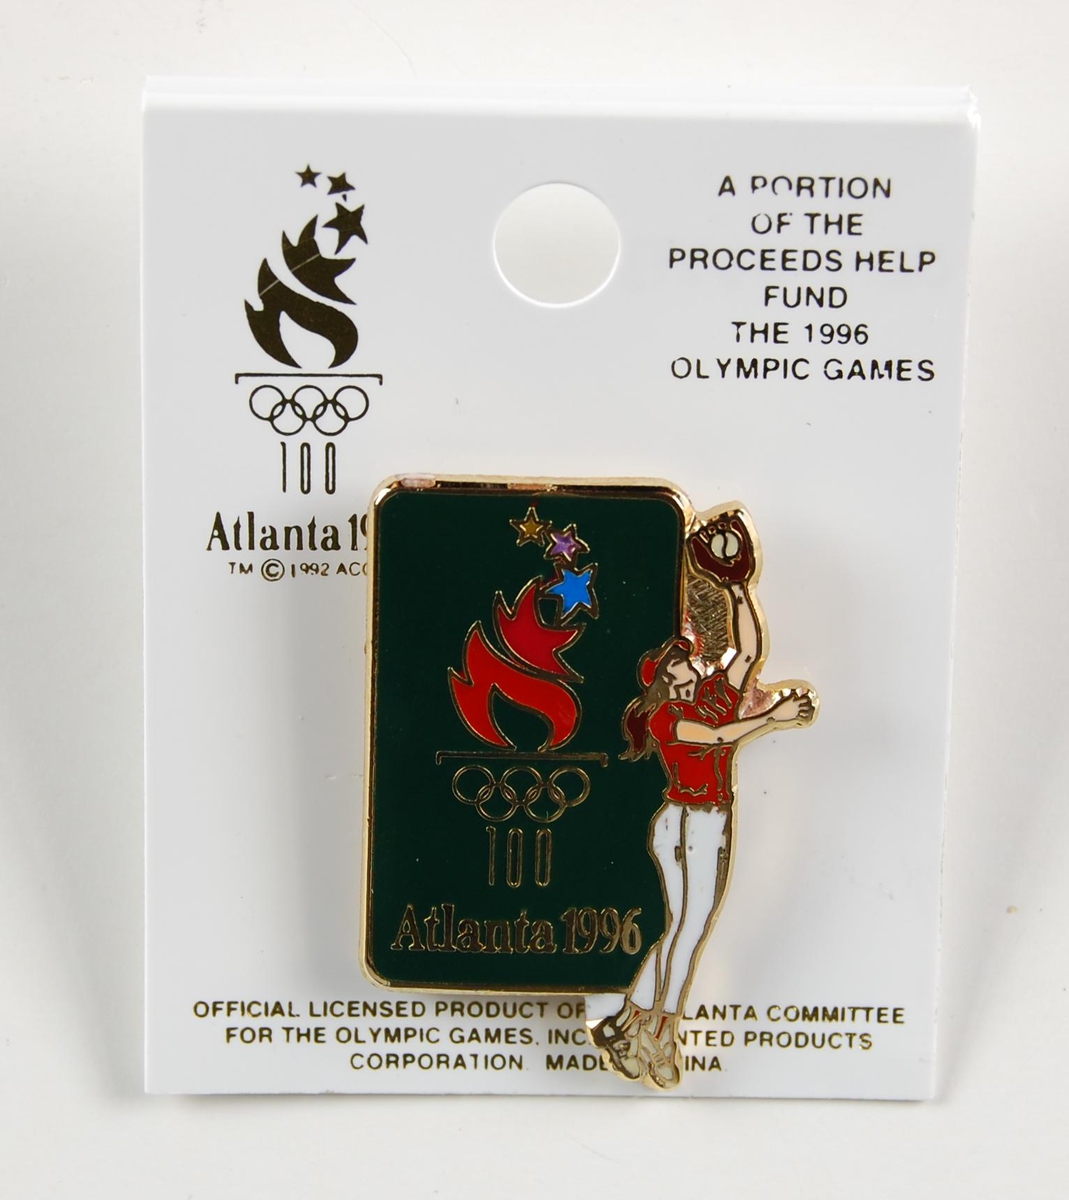 Grønn og gullfarget pins. På pinsen er det en flerfarget logo for de olympiske leker i Atlanta i 1996 og et motiv av en kvinnelig softball-spiller. Motivet preger også pinsens form. Pinsen sitter festet til en liten plate av papp.